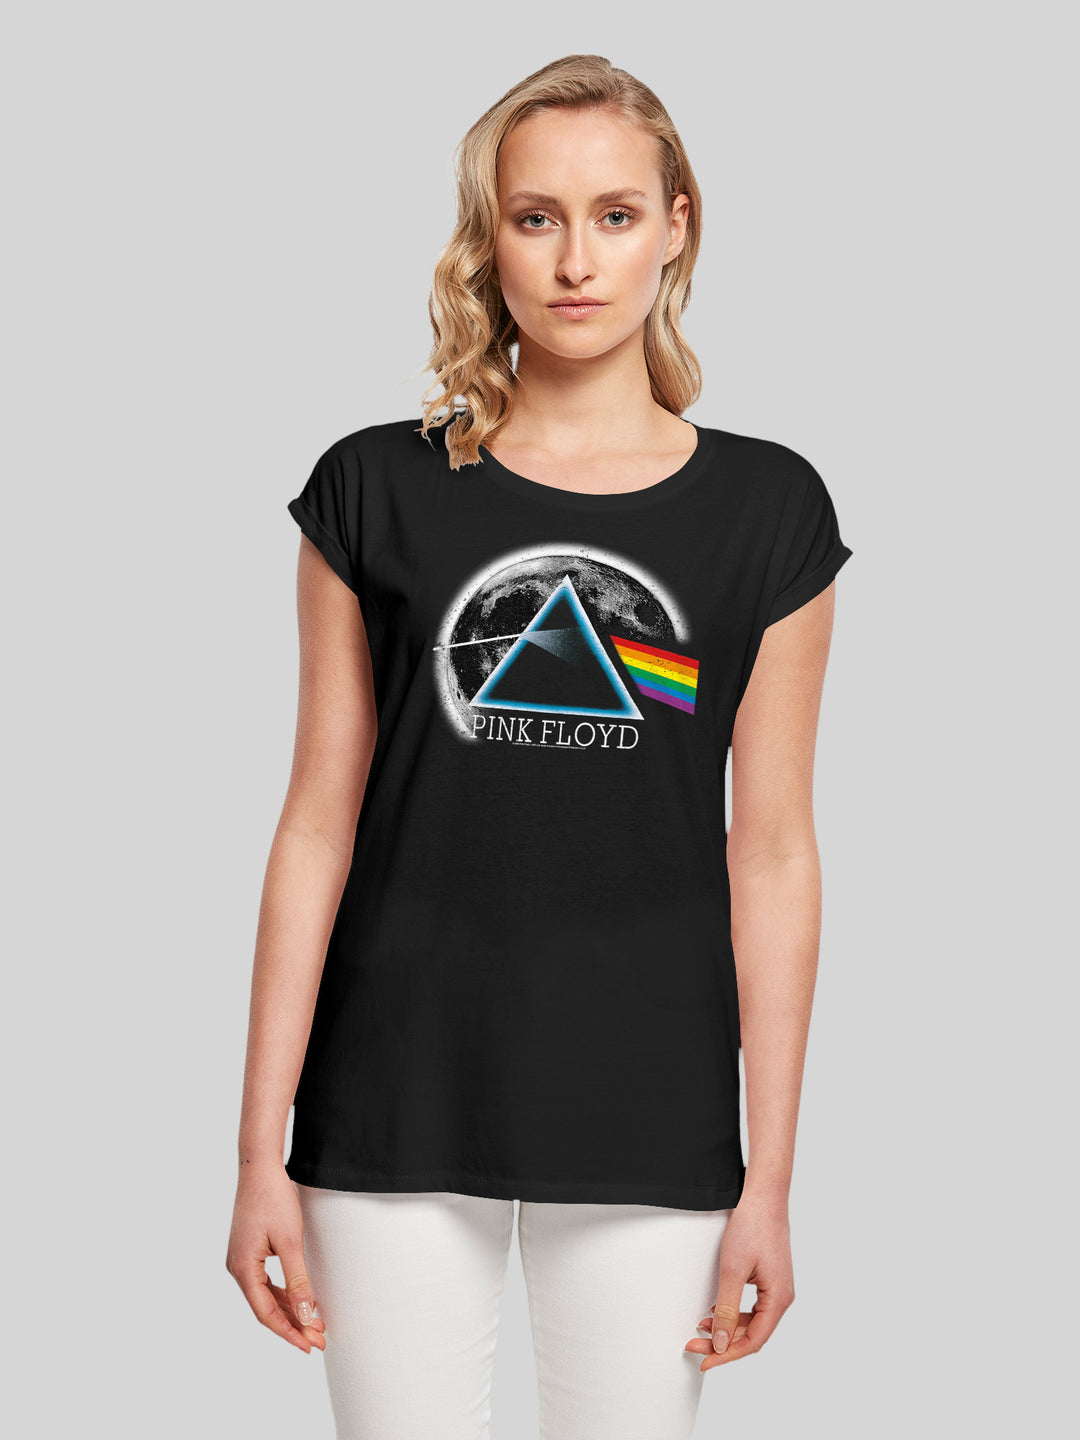 Pink Floyd T-Shirt | Dark Side of The Moon | Premium Short Sleeve Ladies Tee